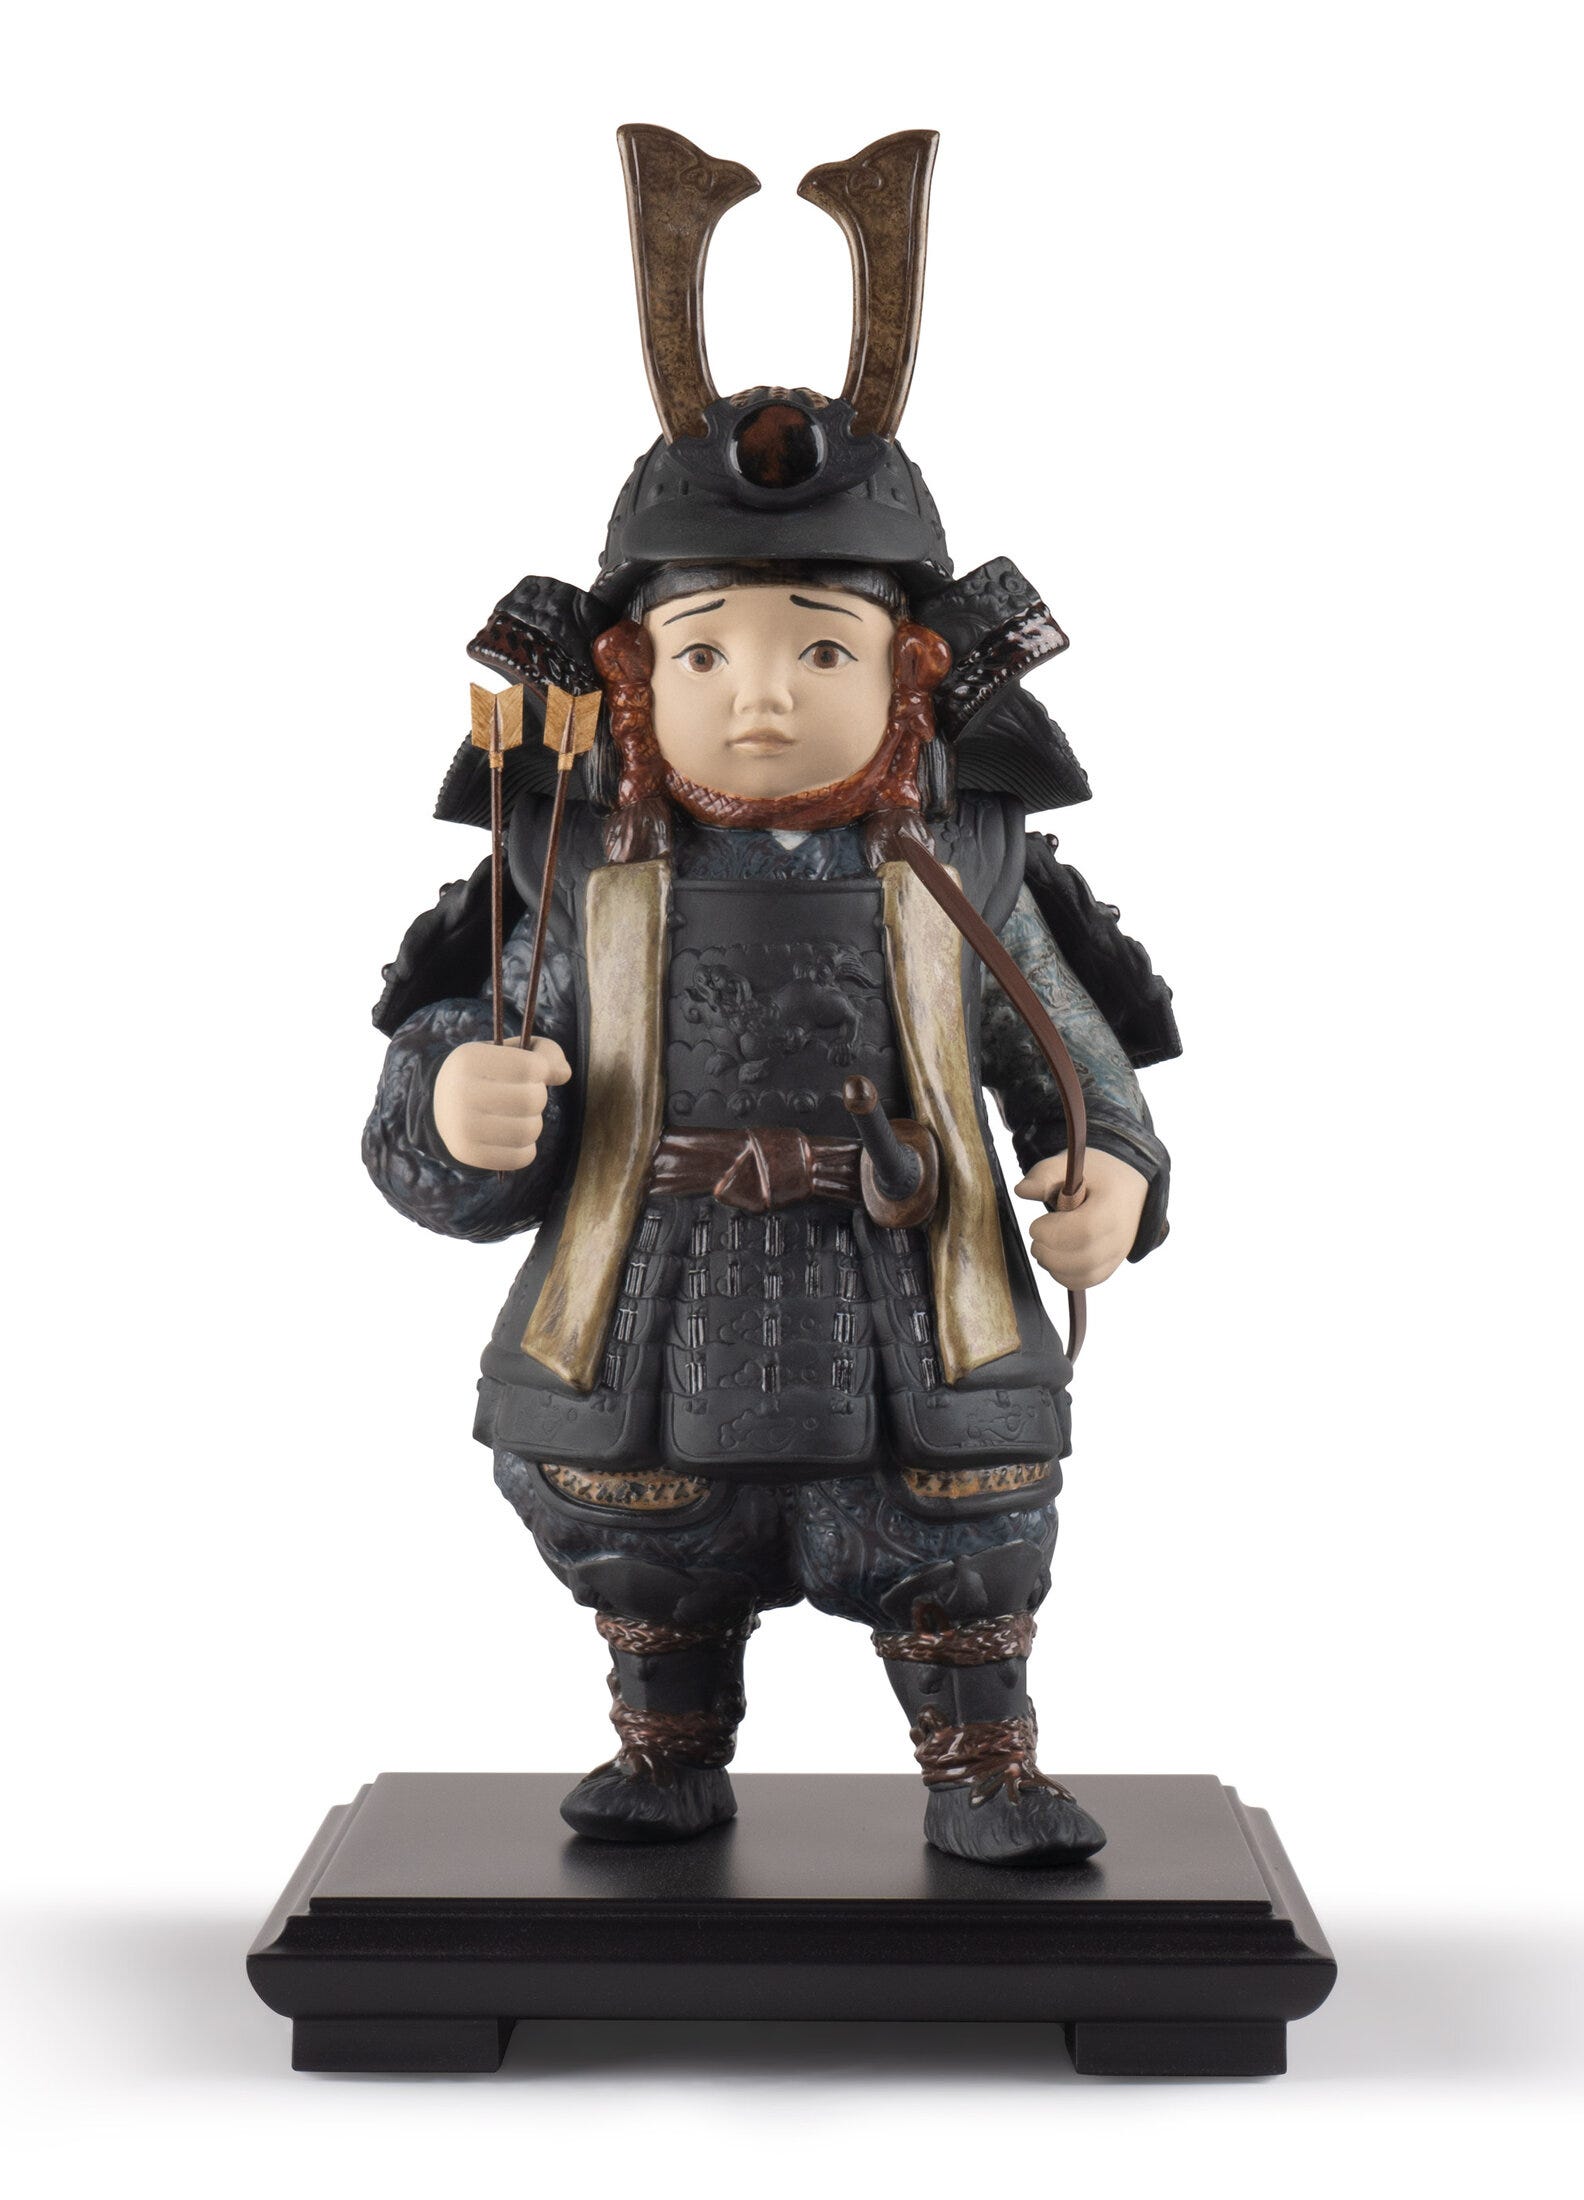 Warrior Boy Figurine. Brown